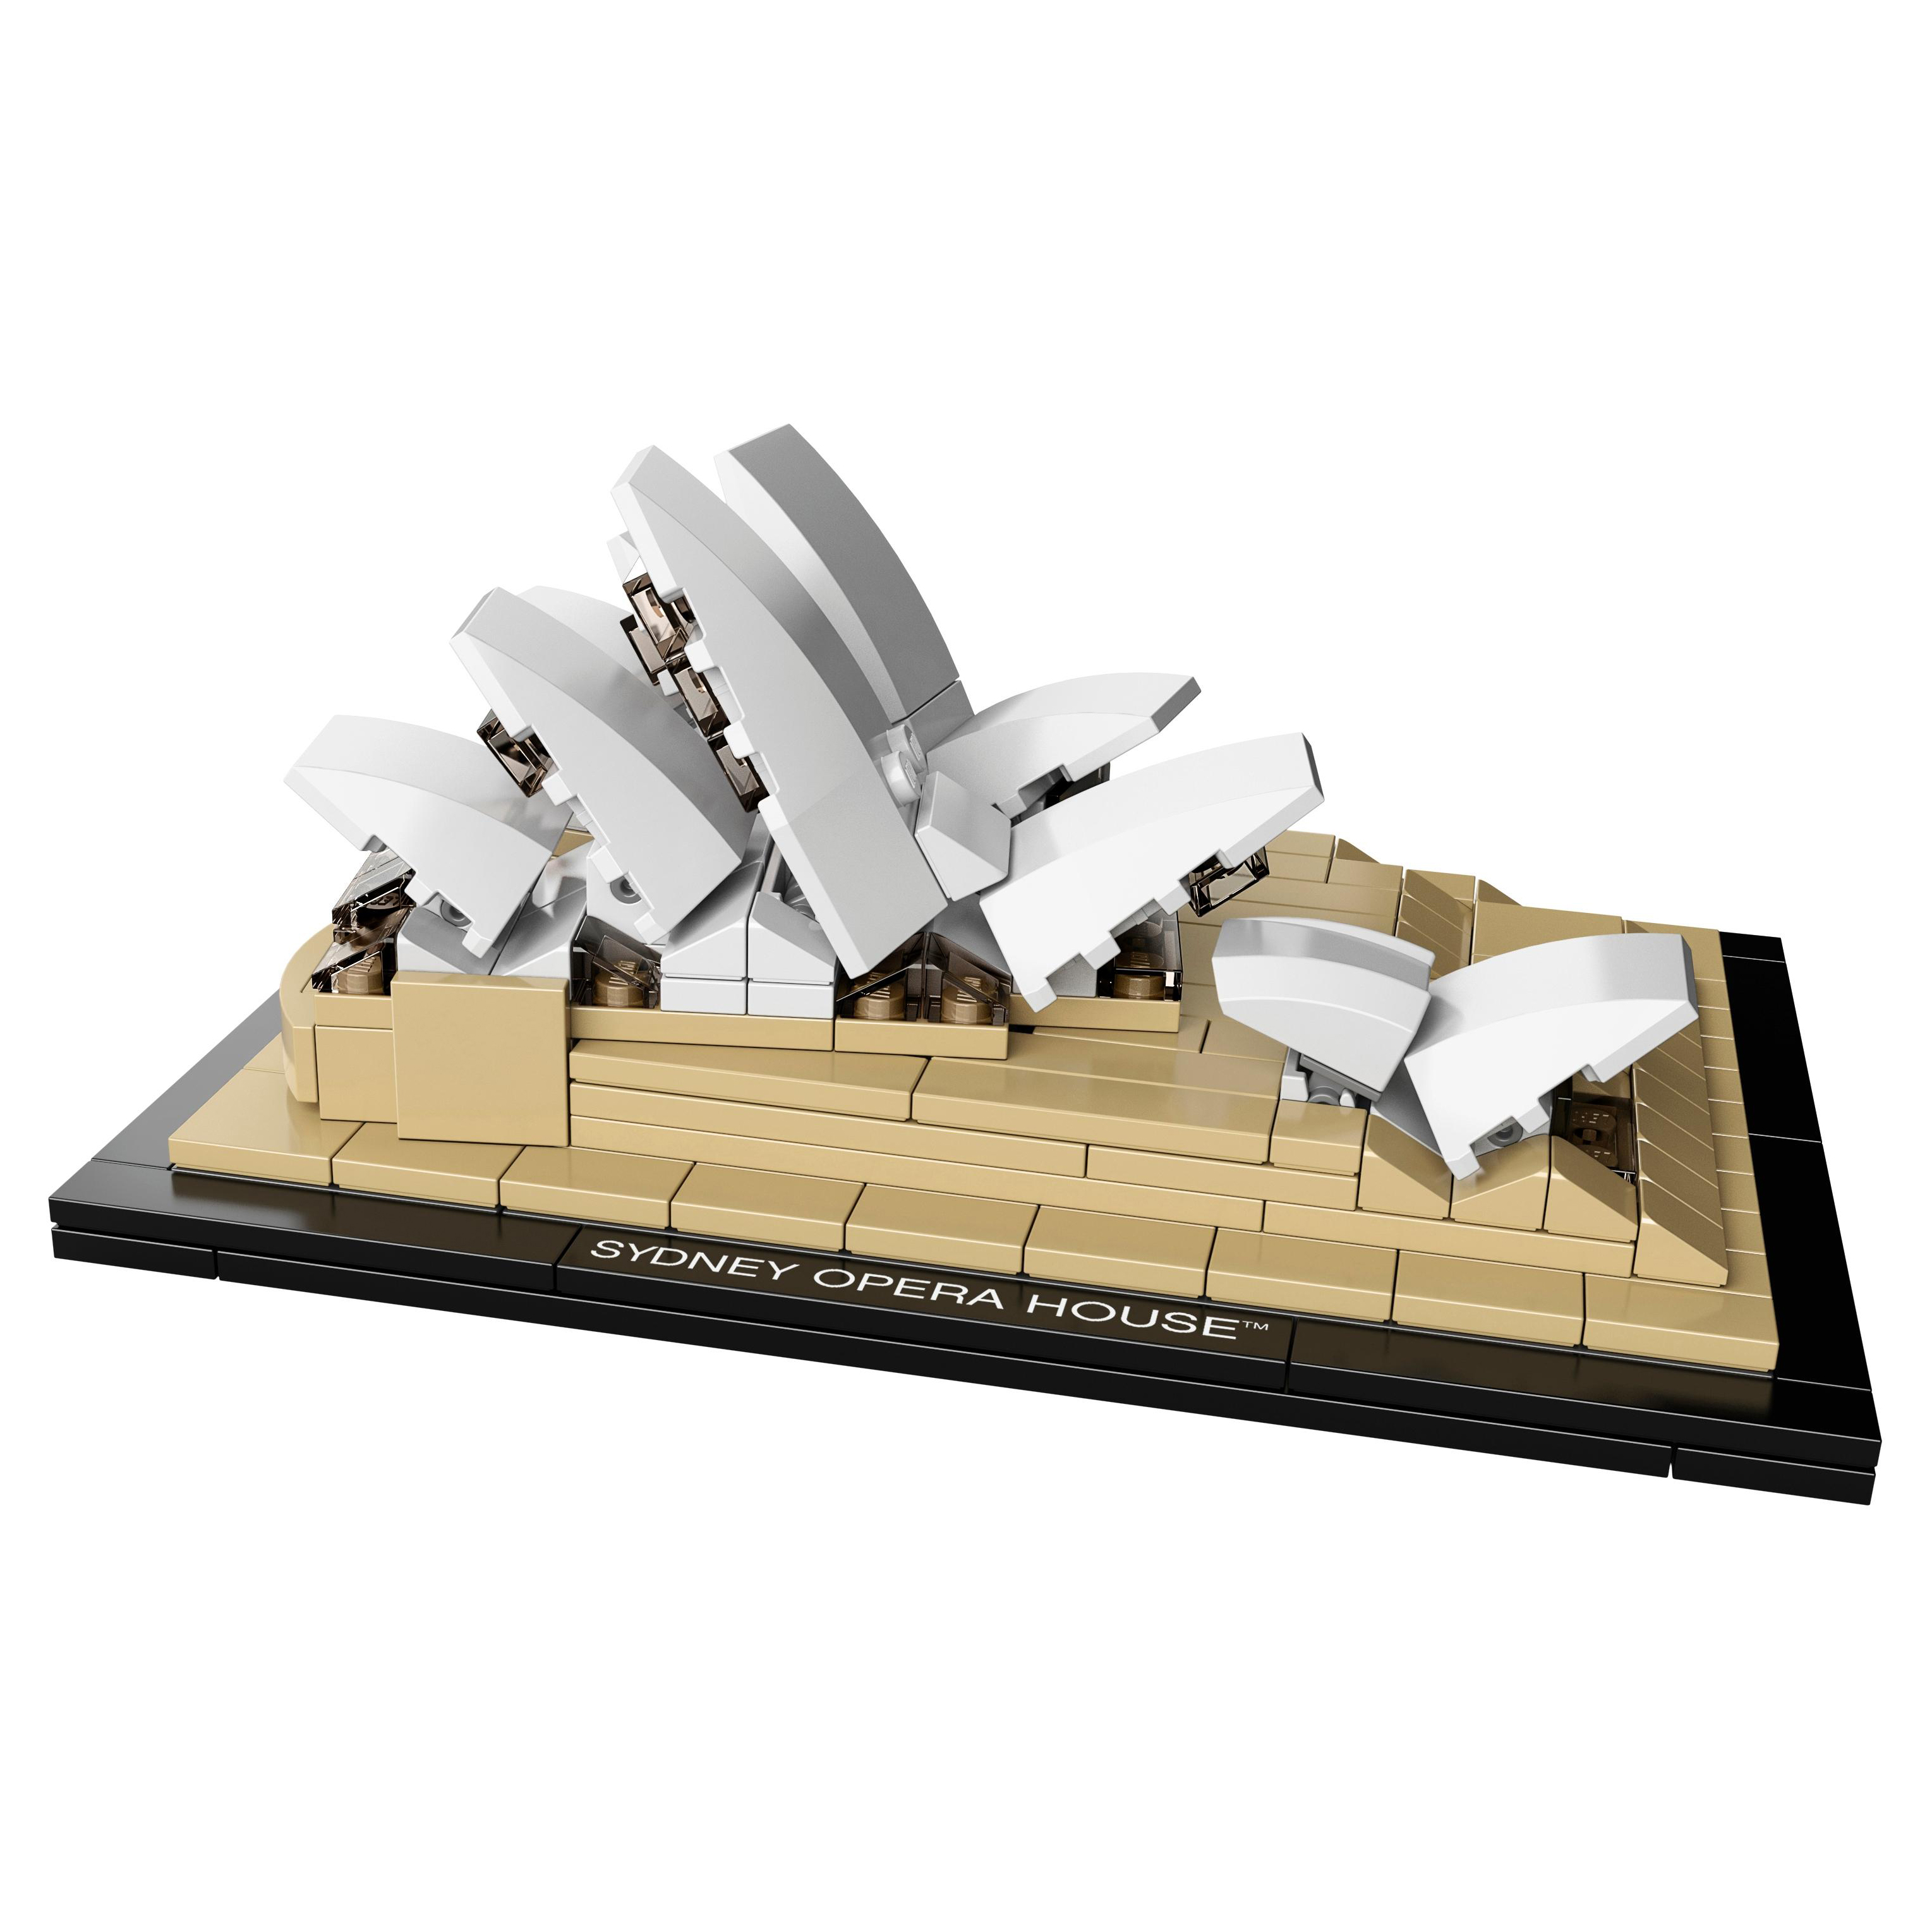 Купить Конструктор lego architecture sydney opera house 21012, Конструктор LEGO Architecture Sydney Opera House (21012),